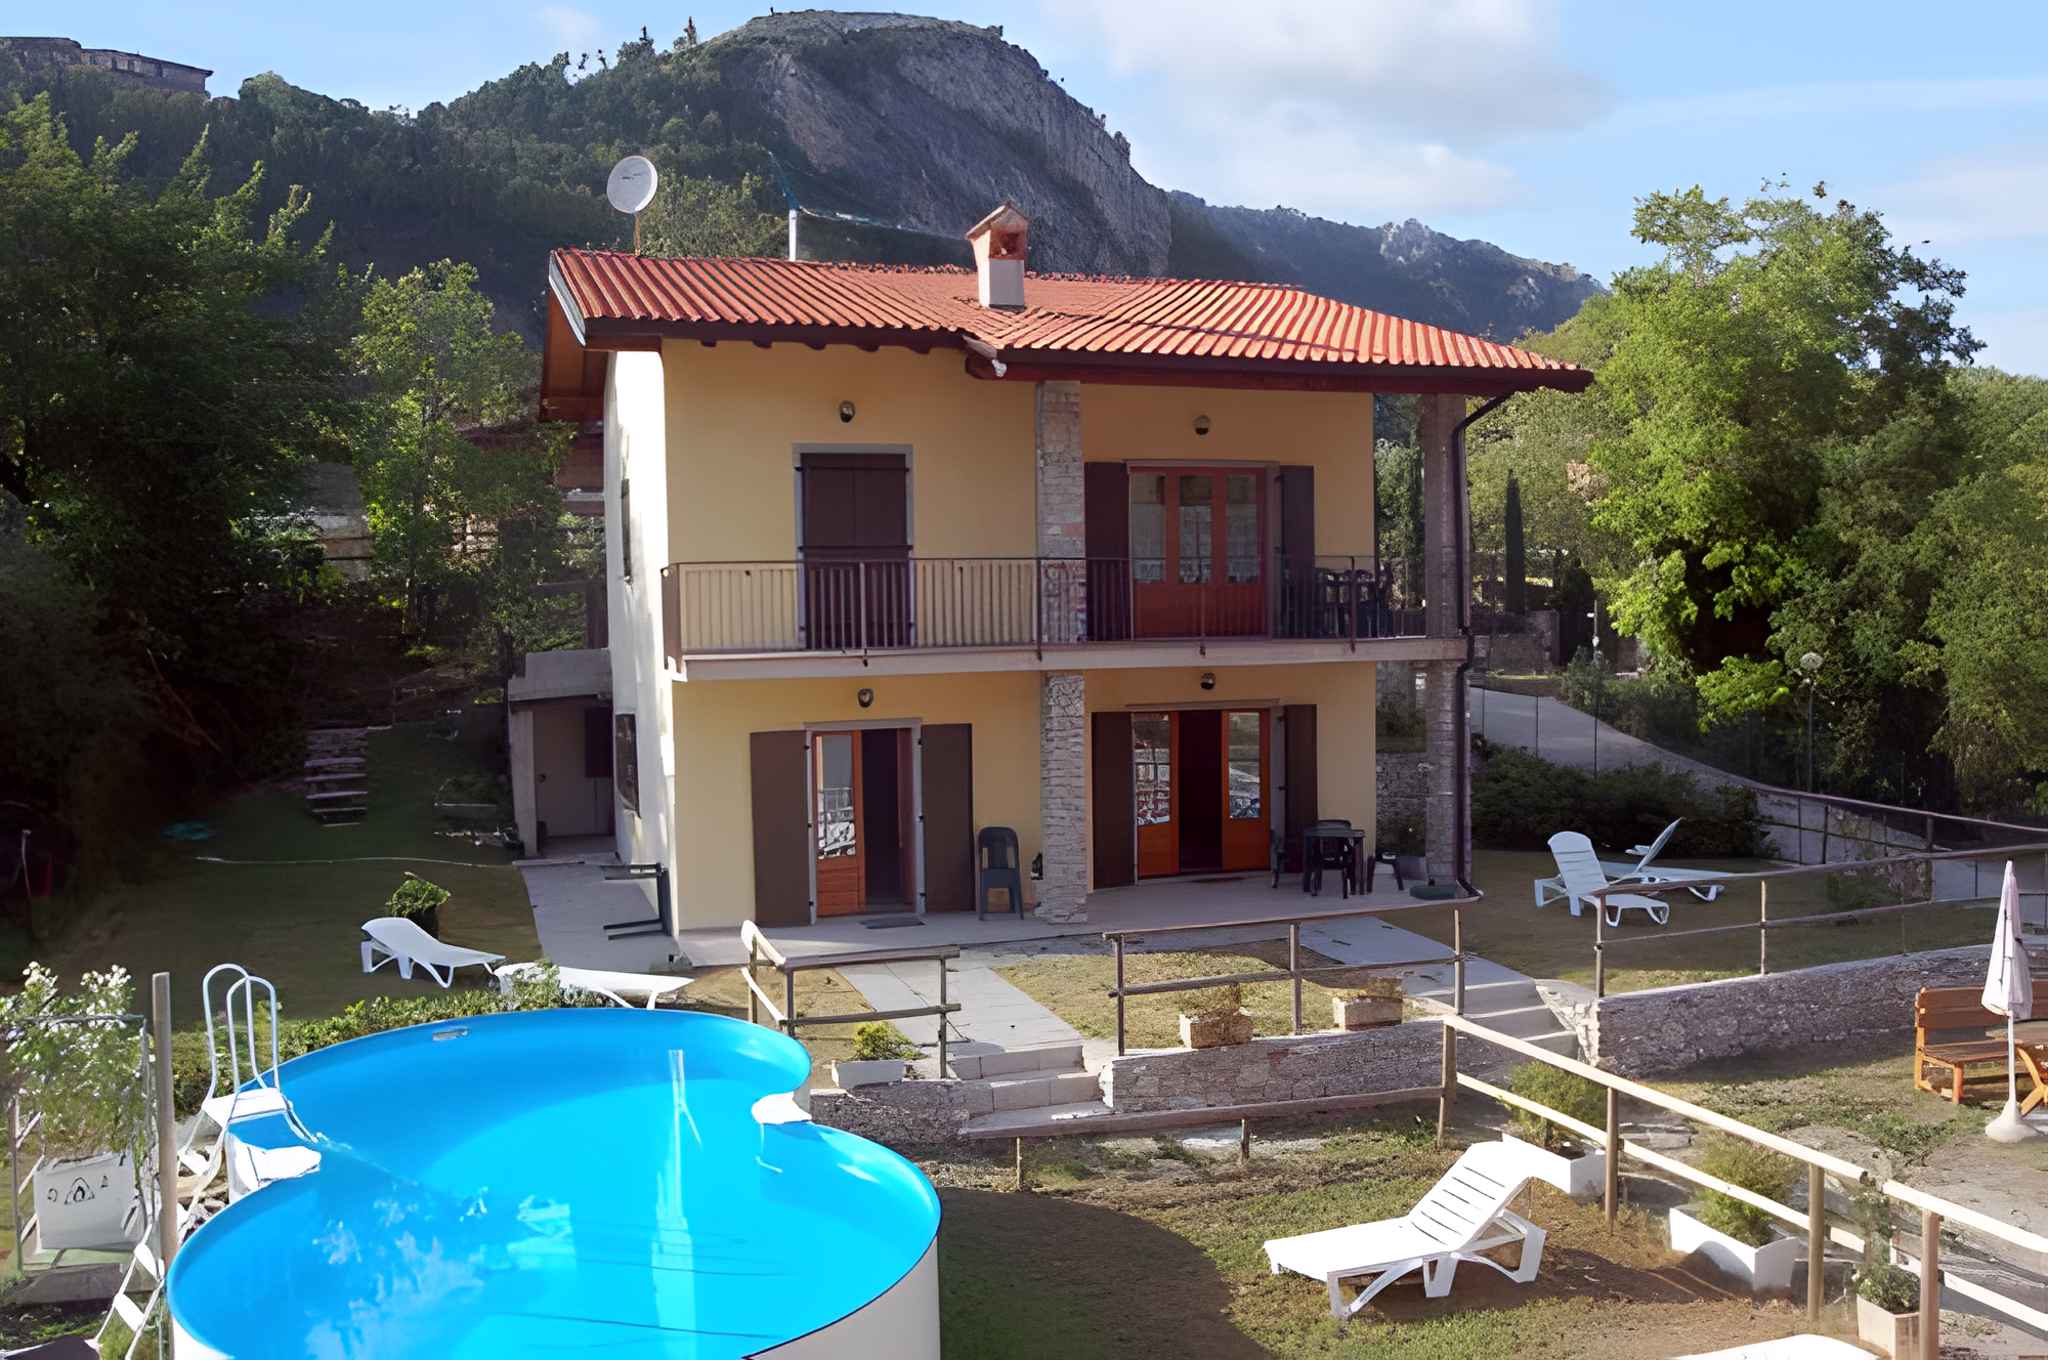 Ferienwohnung in der Ferienanlage Casa Susy  in Italien